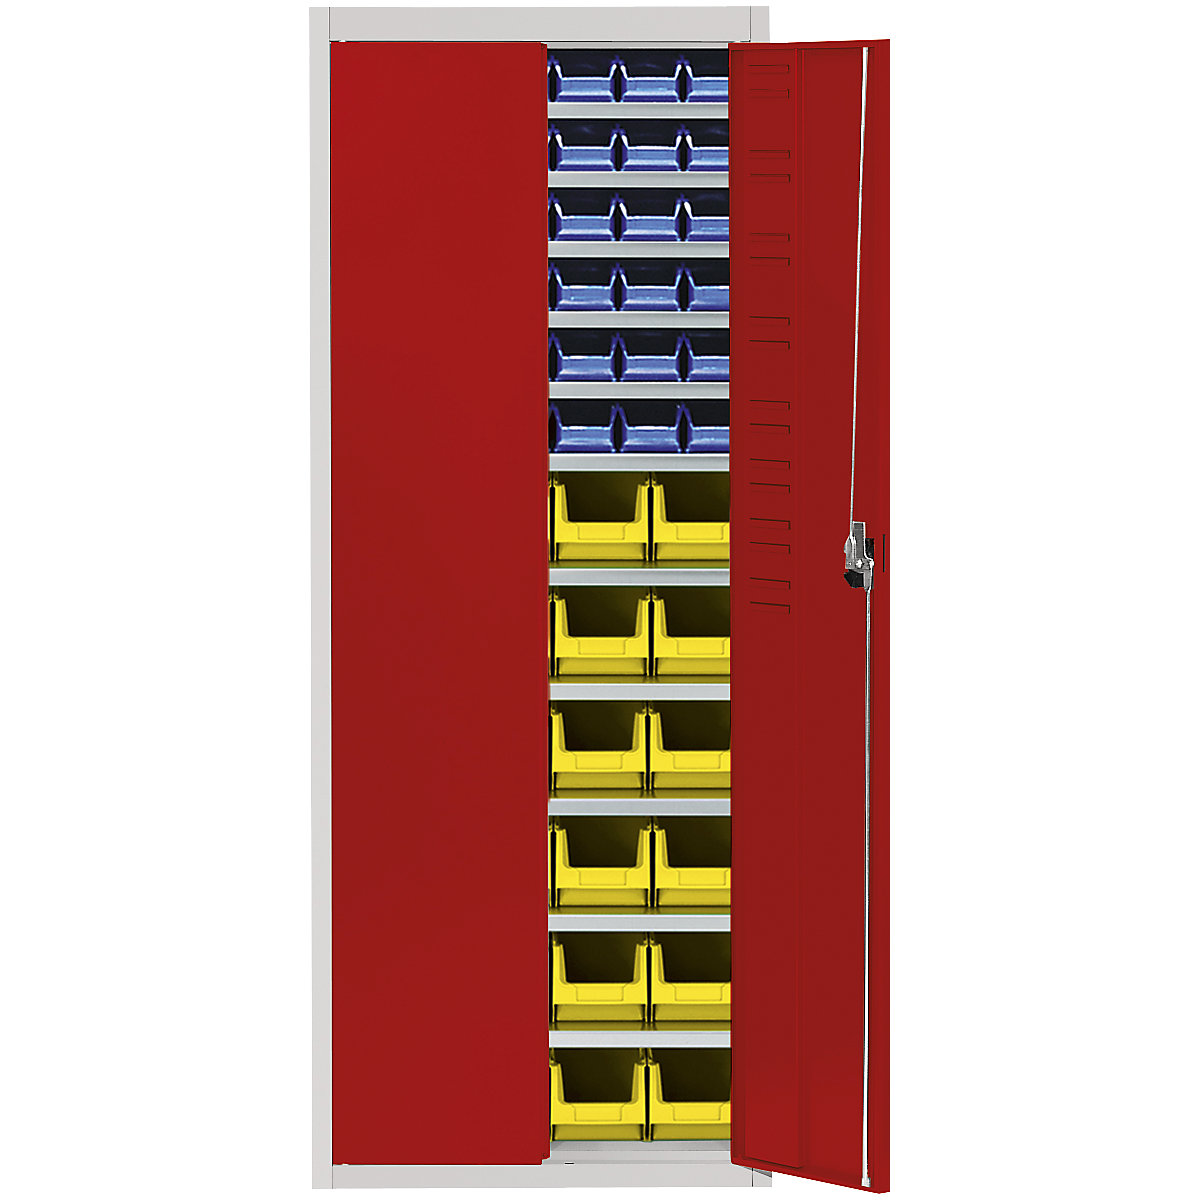 Skladišni ormar s otvorenim skladišnim kutijama – mauser, VxŠxD 1740 x 680 x 280 mm, u dvije boje, korpus u sivoj boji, vrata u crnoj boji, 60 kutija-3